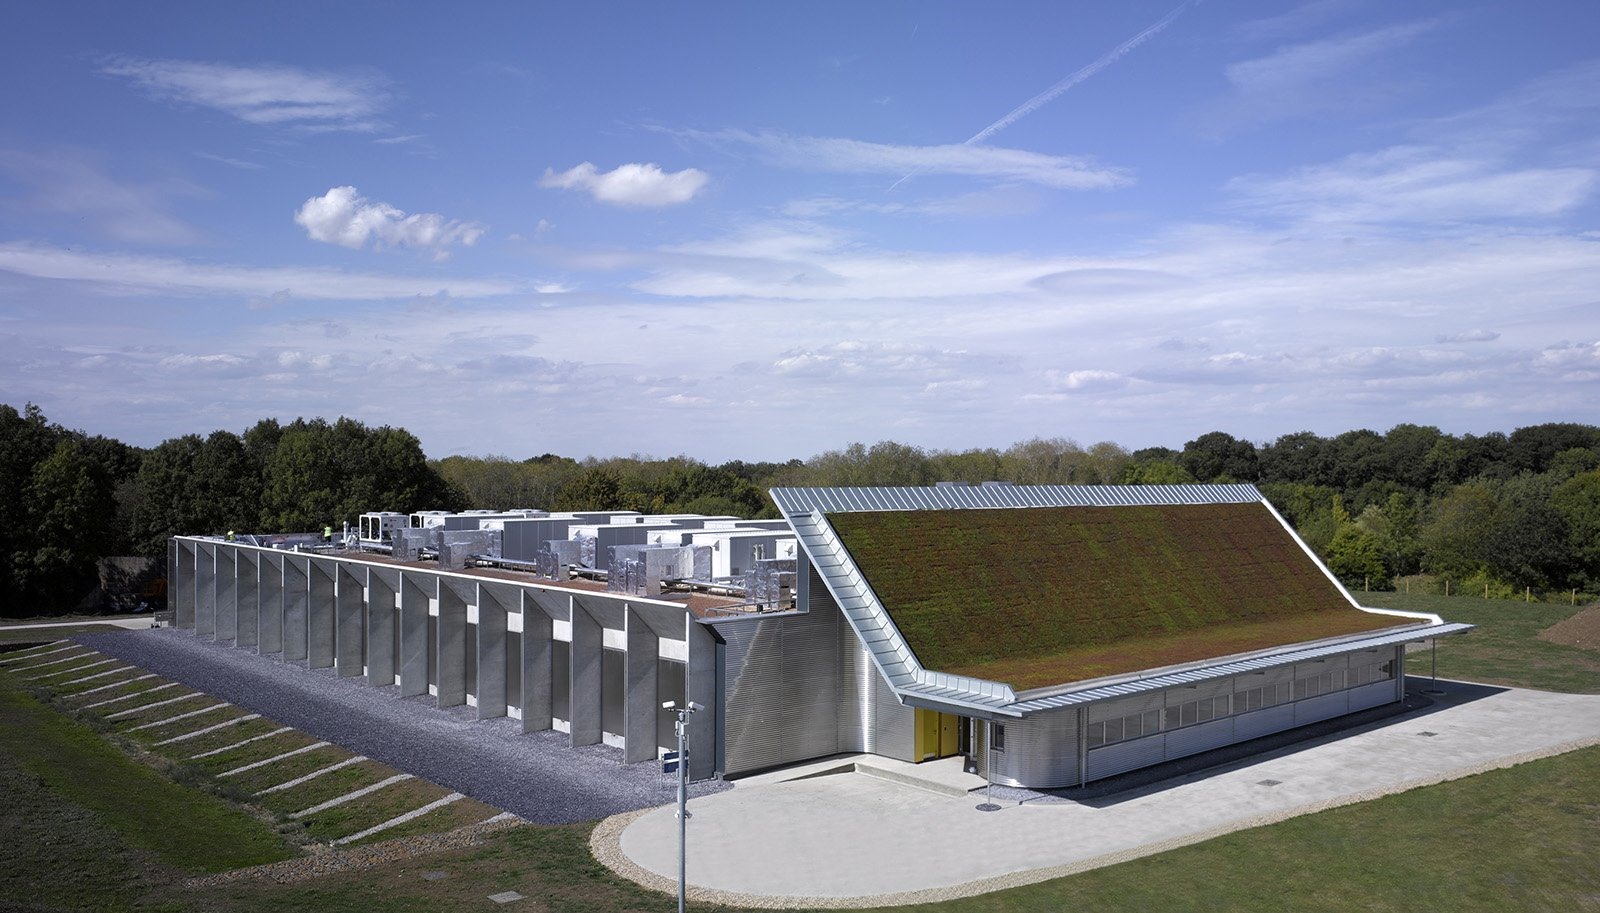 Trung tâm lưu trữ phim quốc gia của Anh có độ kín khí tốt hơn 97% so với một tòa nhà sử dụng ít năng lượng điển hình.